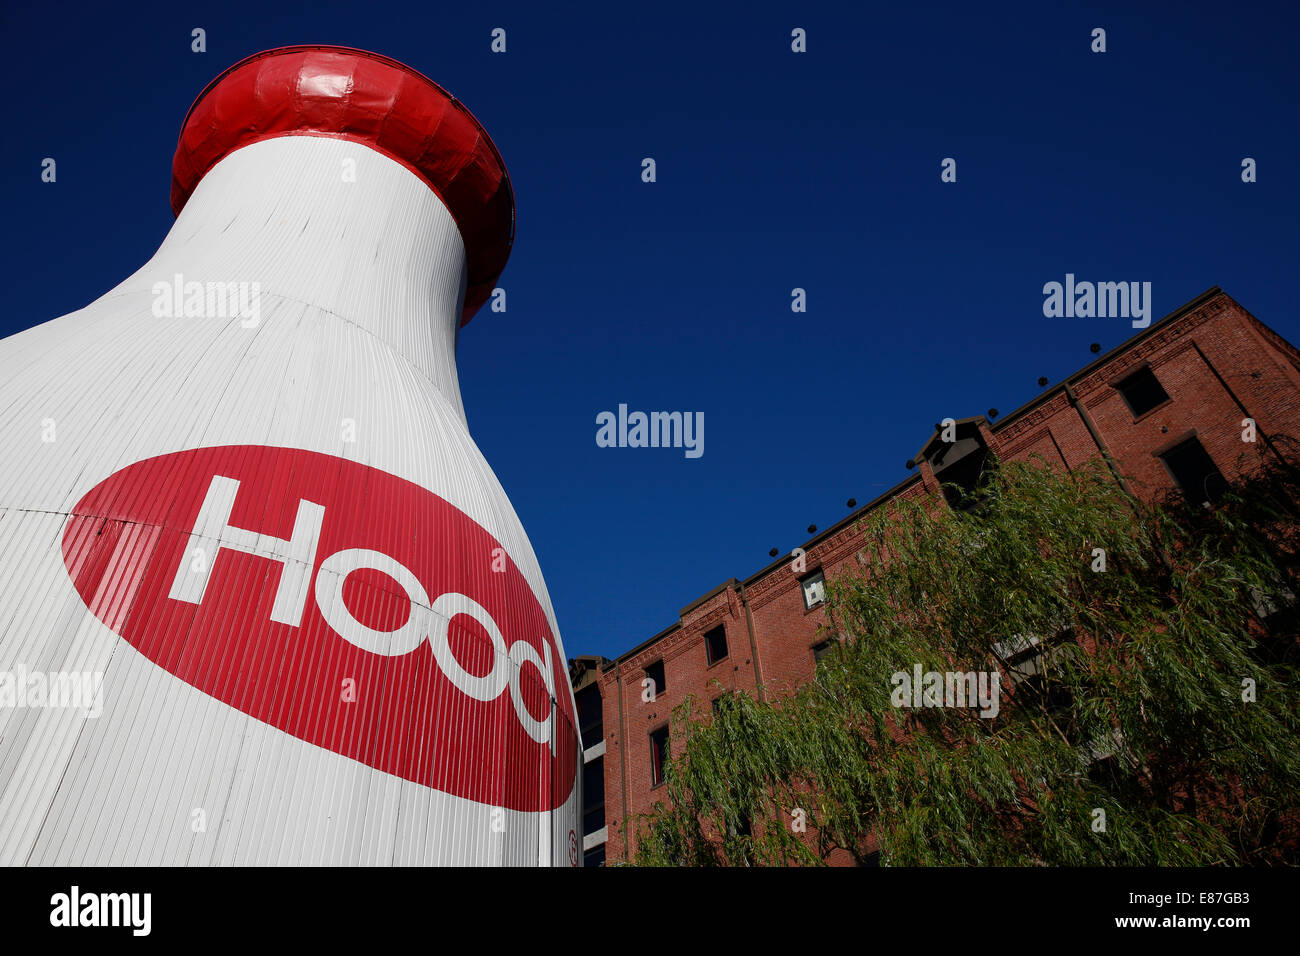 Giant Hood milk bottle at the Children's Museum, Boston, Massachusetts Stock Photo